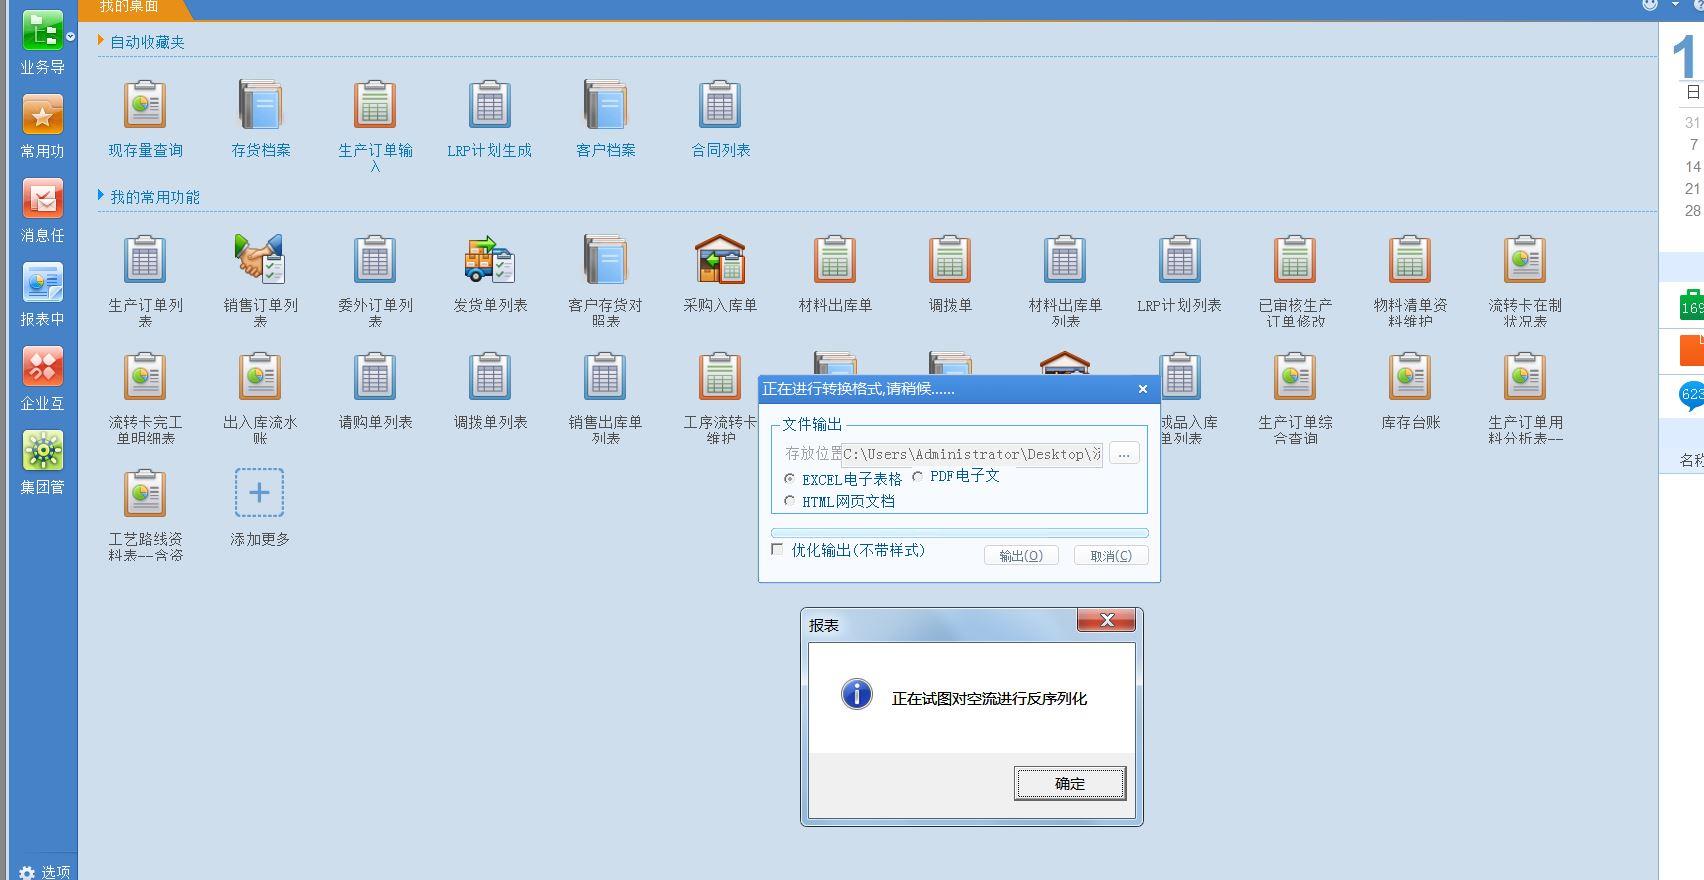 广州哪里可以购买财务软件
:e会计财务软件怎么修改凭证